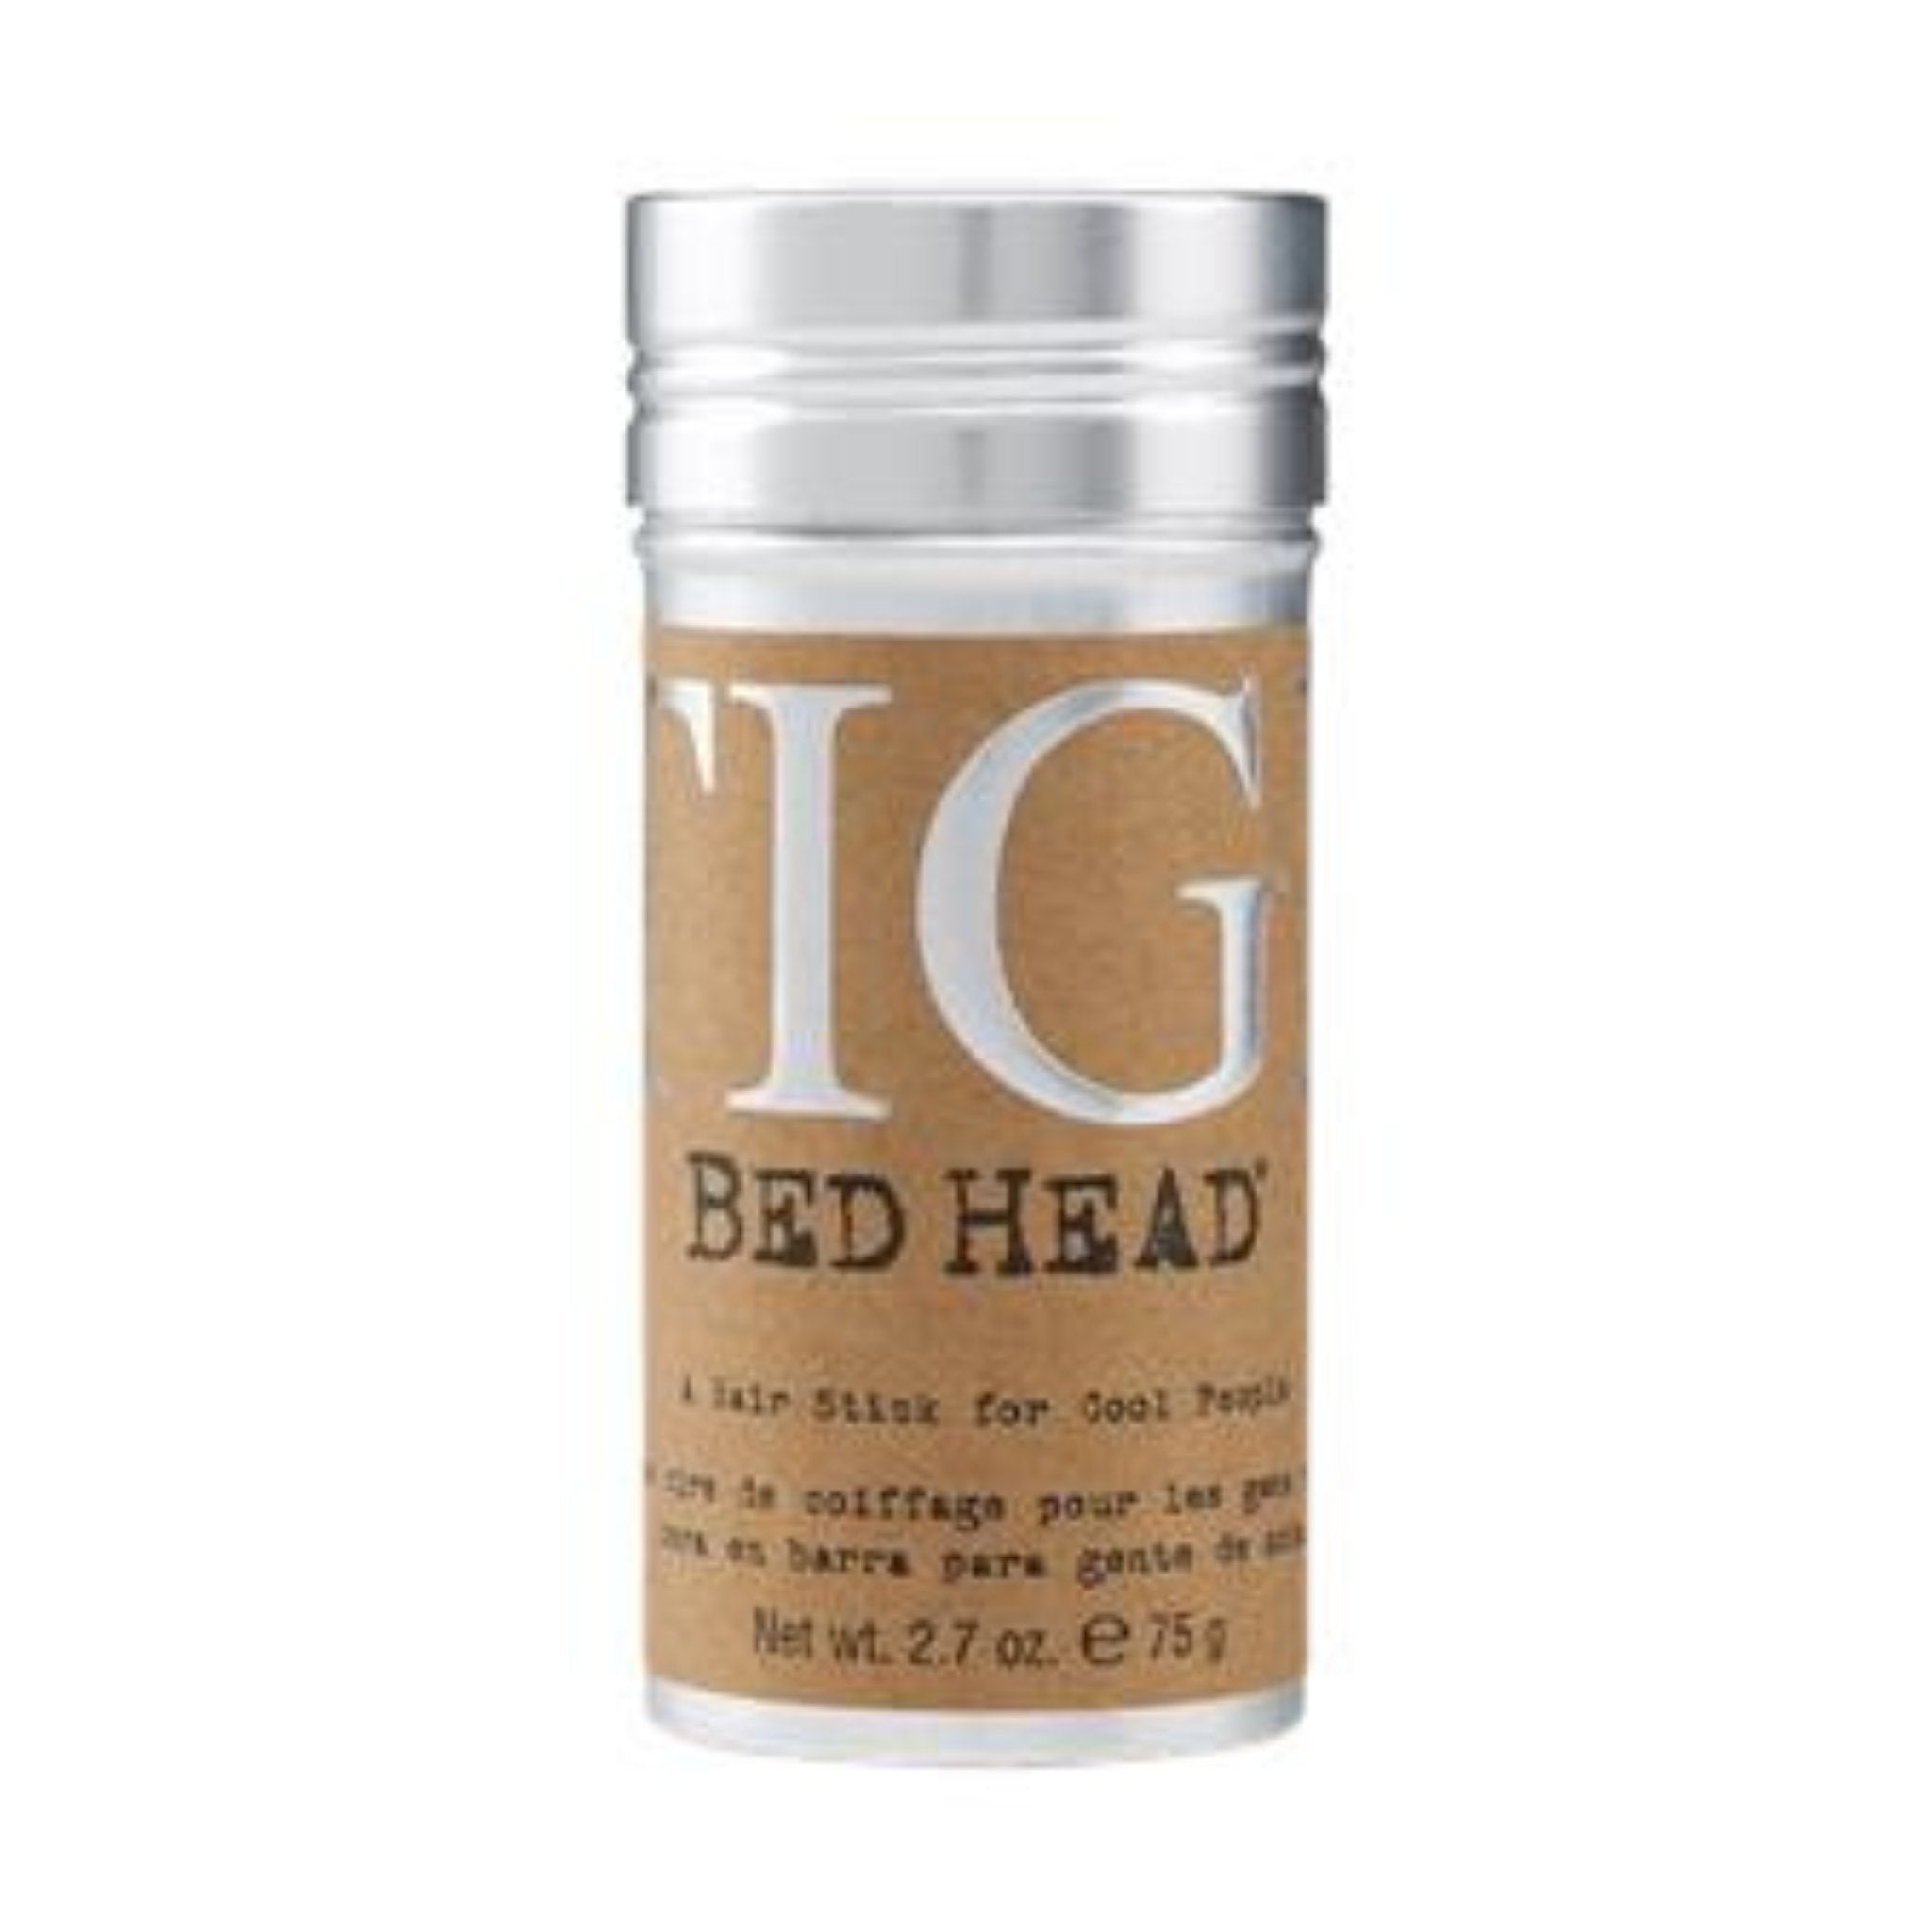 Bed Head. Cire de Coiffage - 75 g - Concept C. Shop